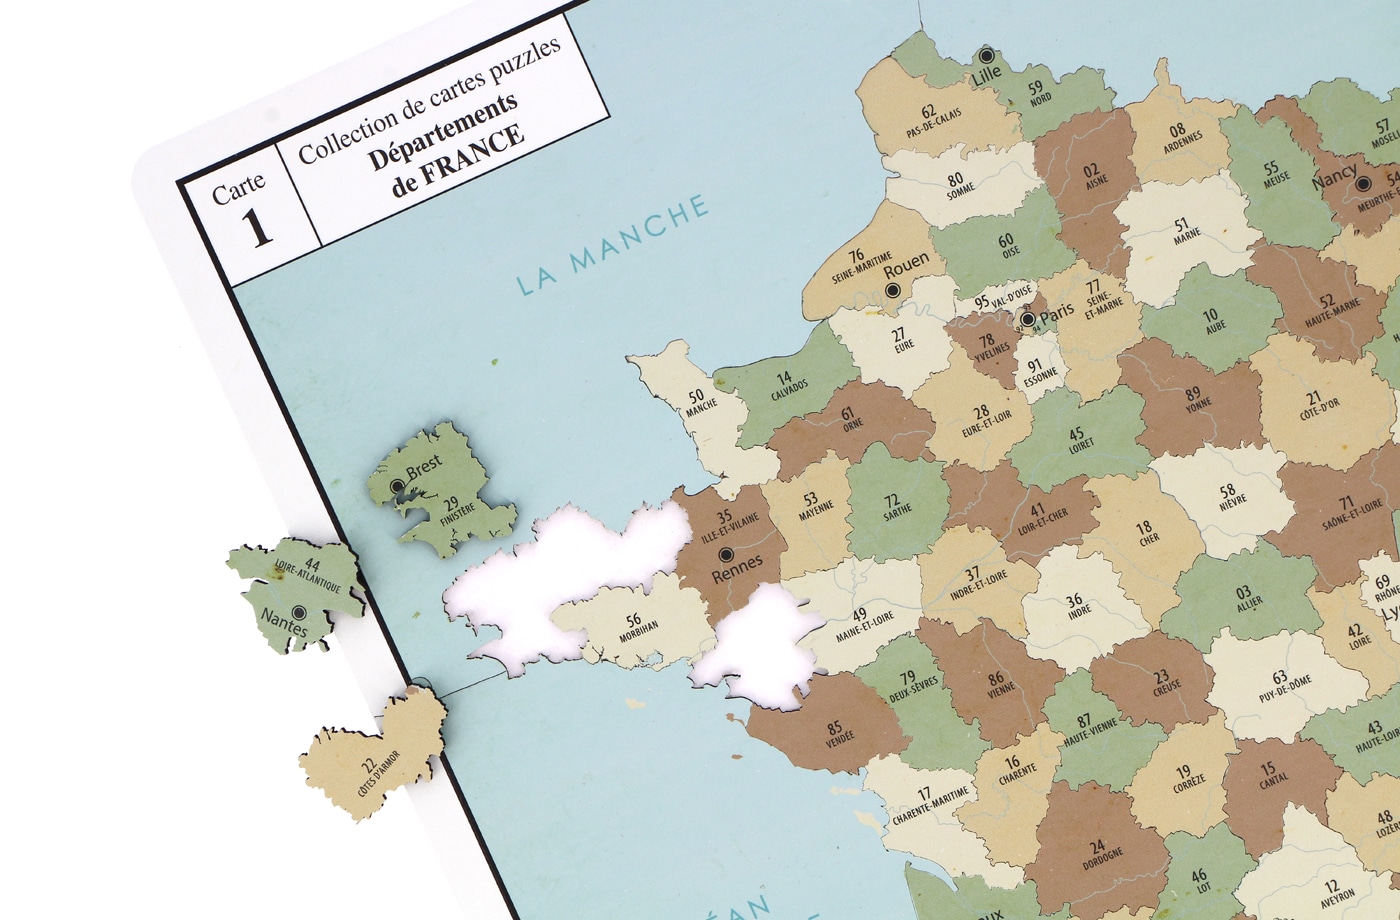 Puzzle Carte de France